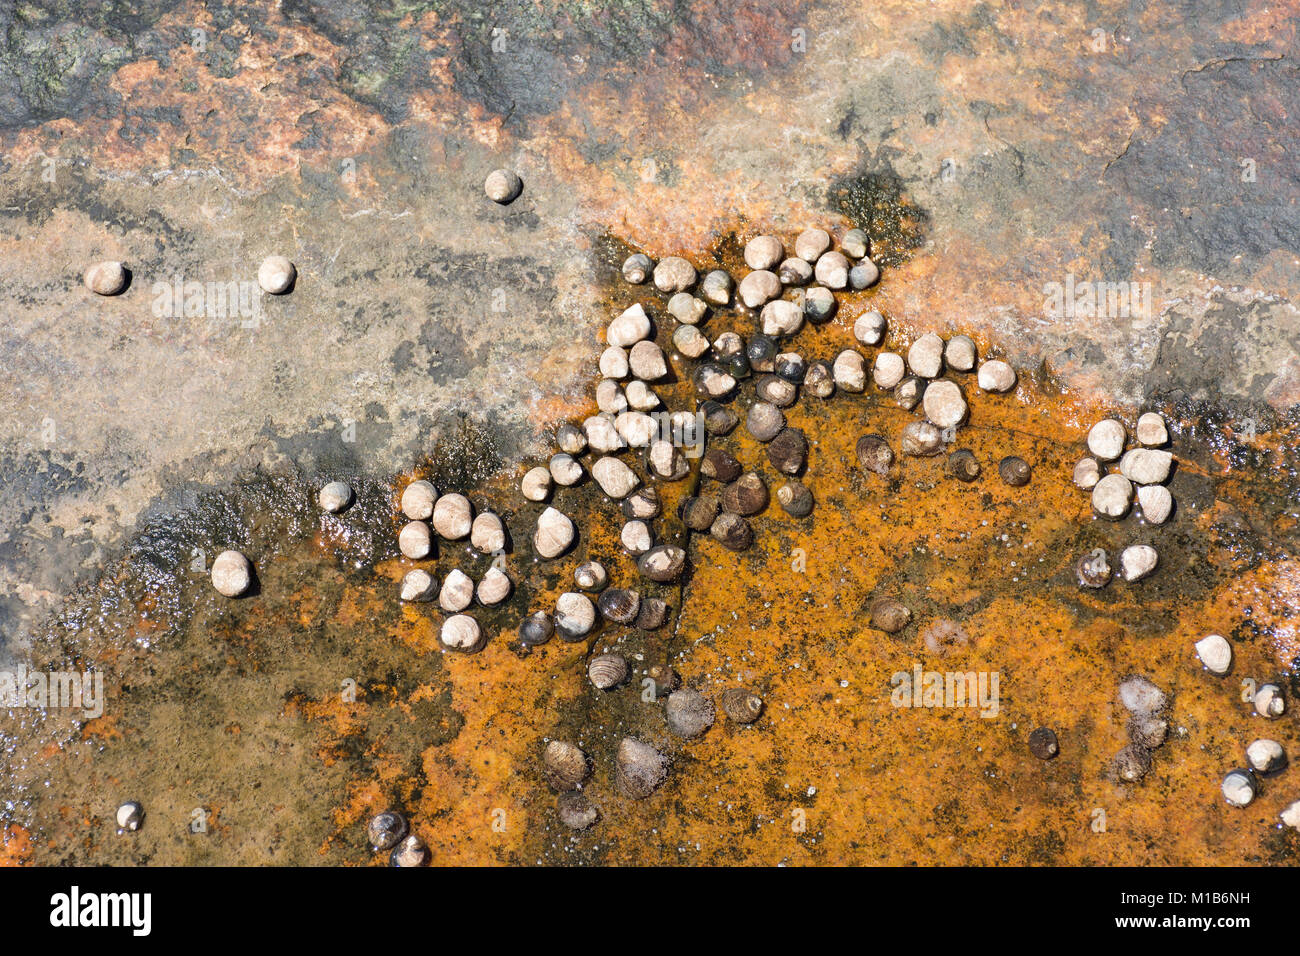 Schnecken oder meeresschnecken auf der Oberfläche von einem Felsen, einige von ihnen in eine Pfütze von Wasser Stockfoto